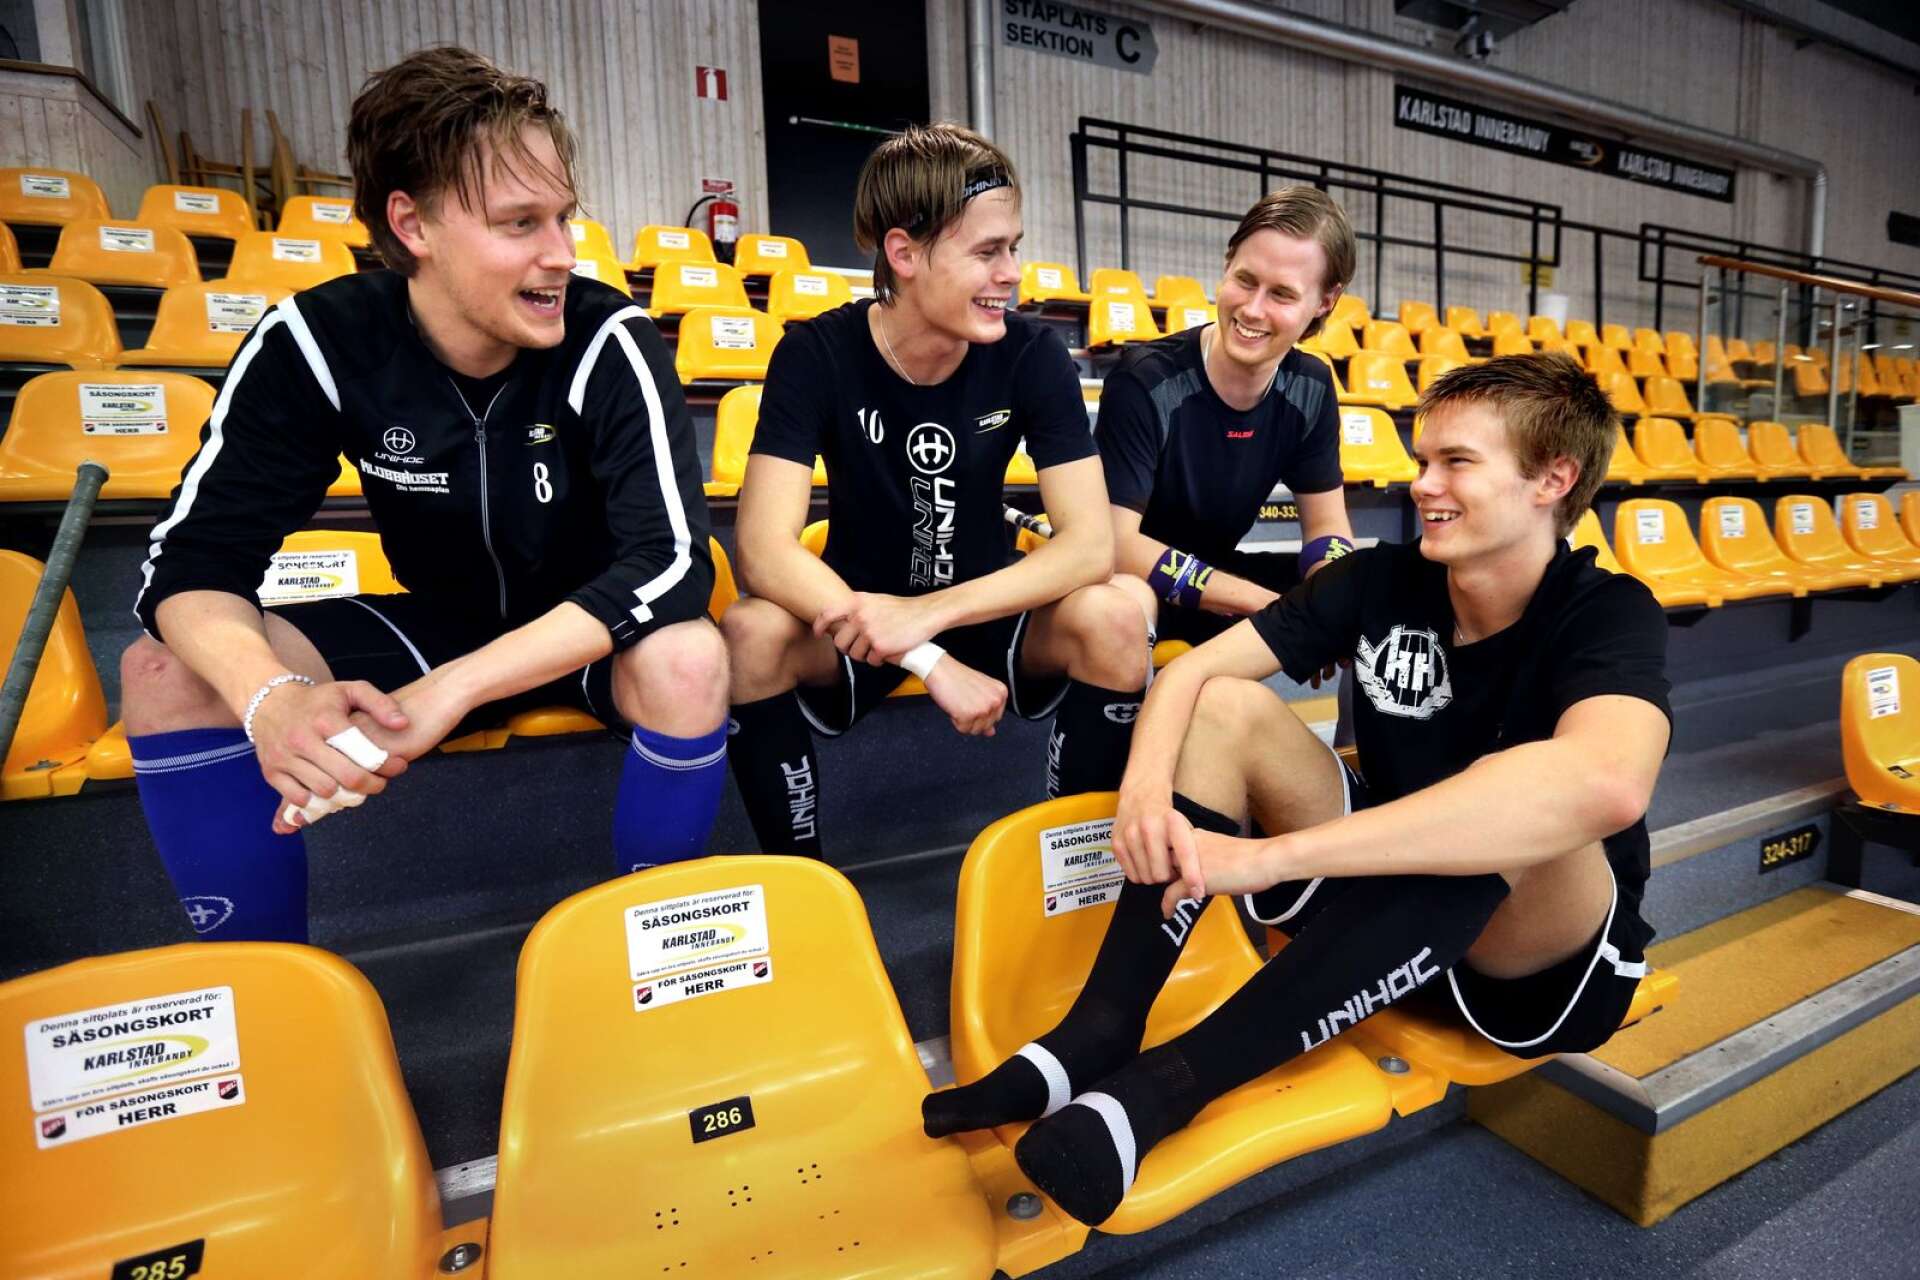 4 x Colling. Från vänster: Tom, Jesper, Adam och William. Det återstår att se om samtliga spelar i Nilsby IK nästa säsong.